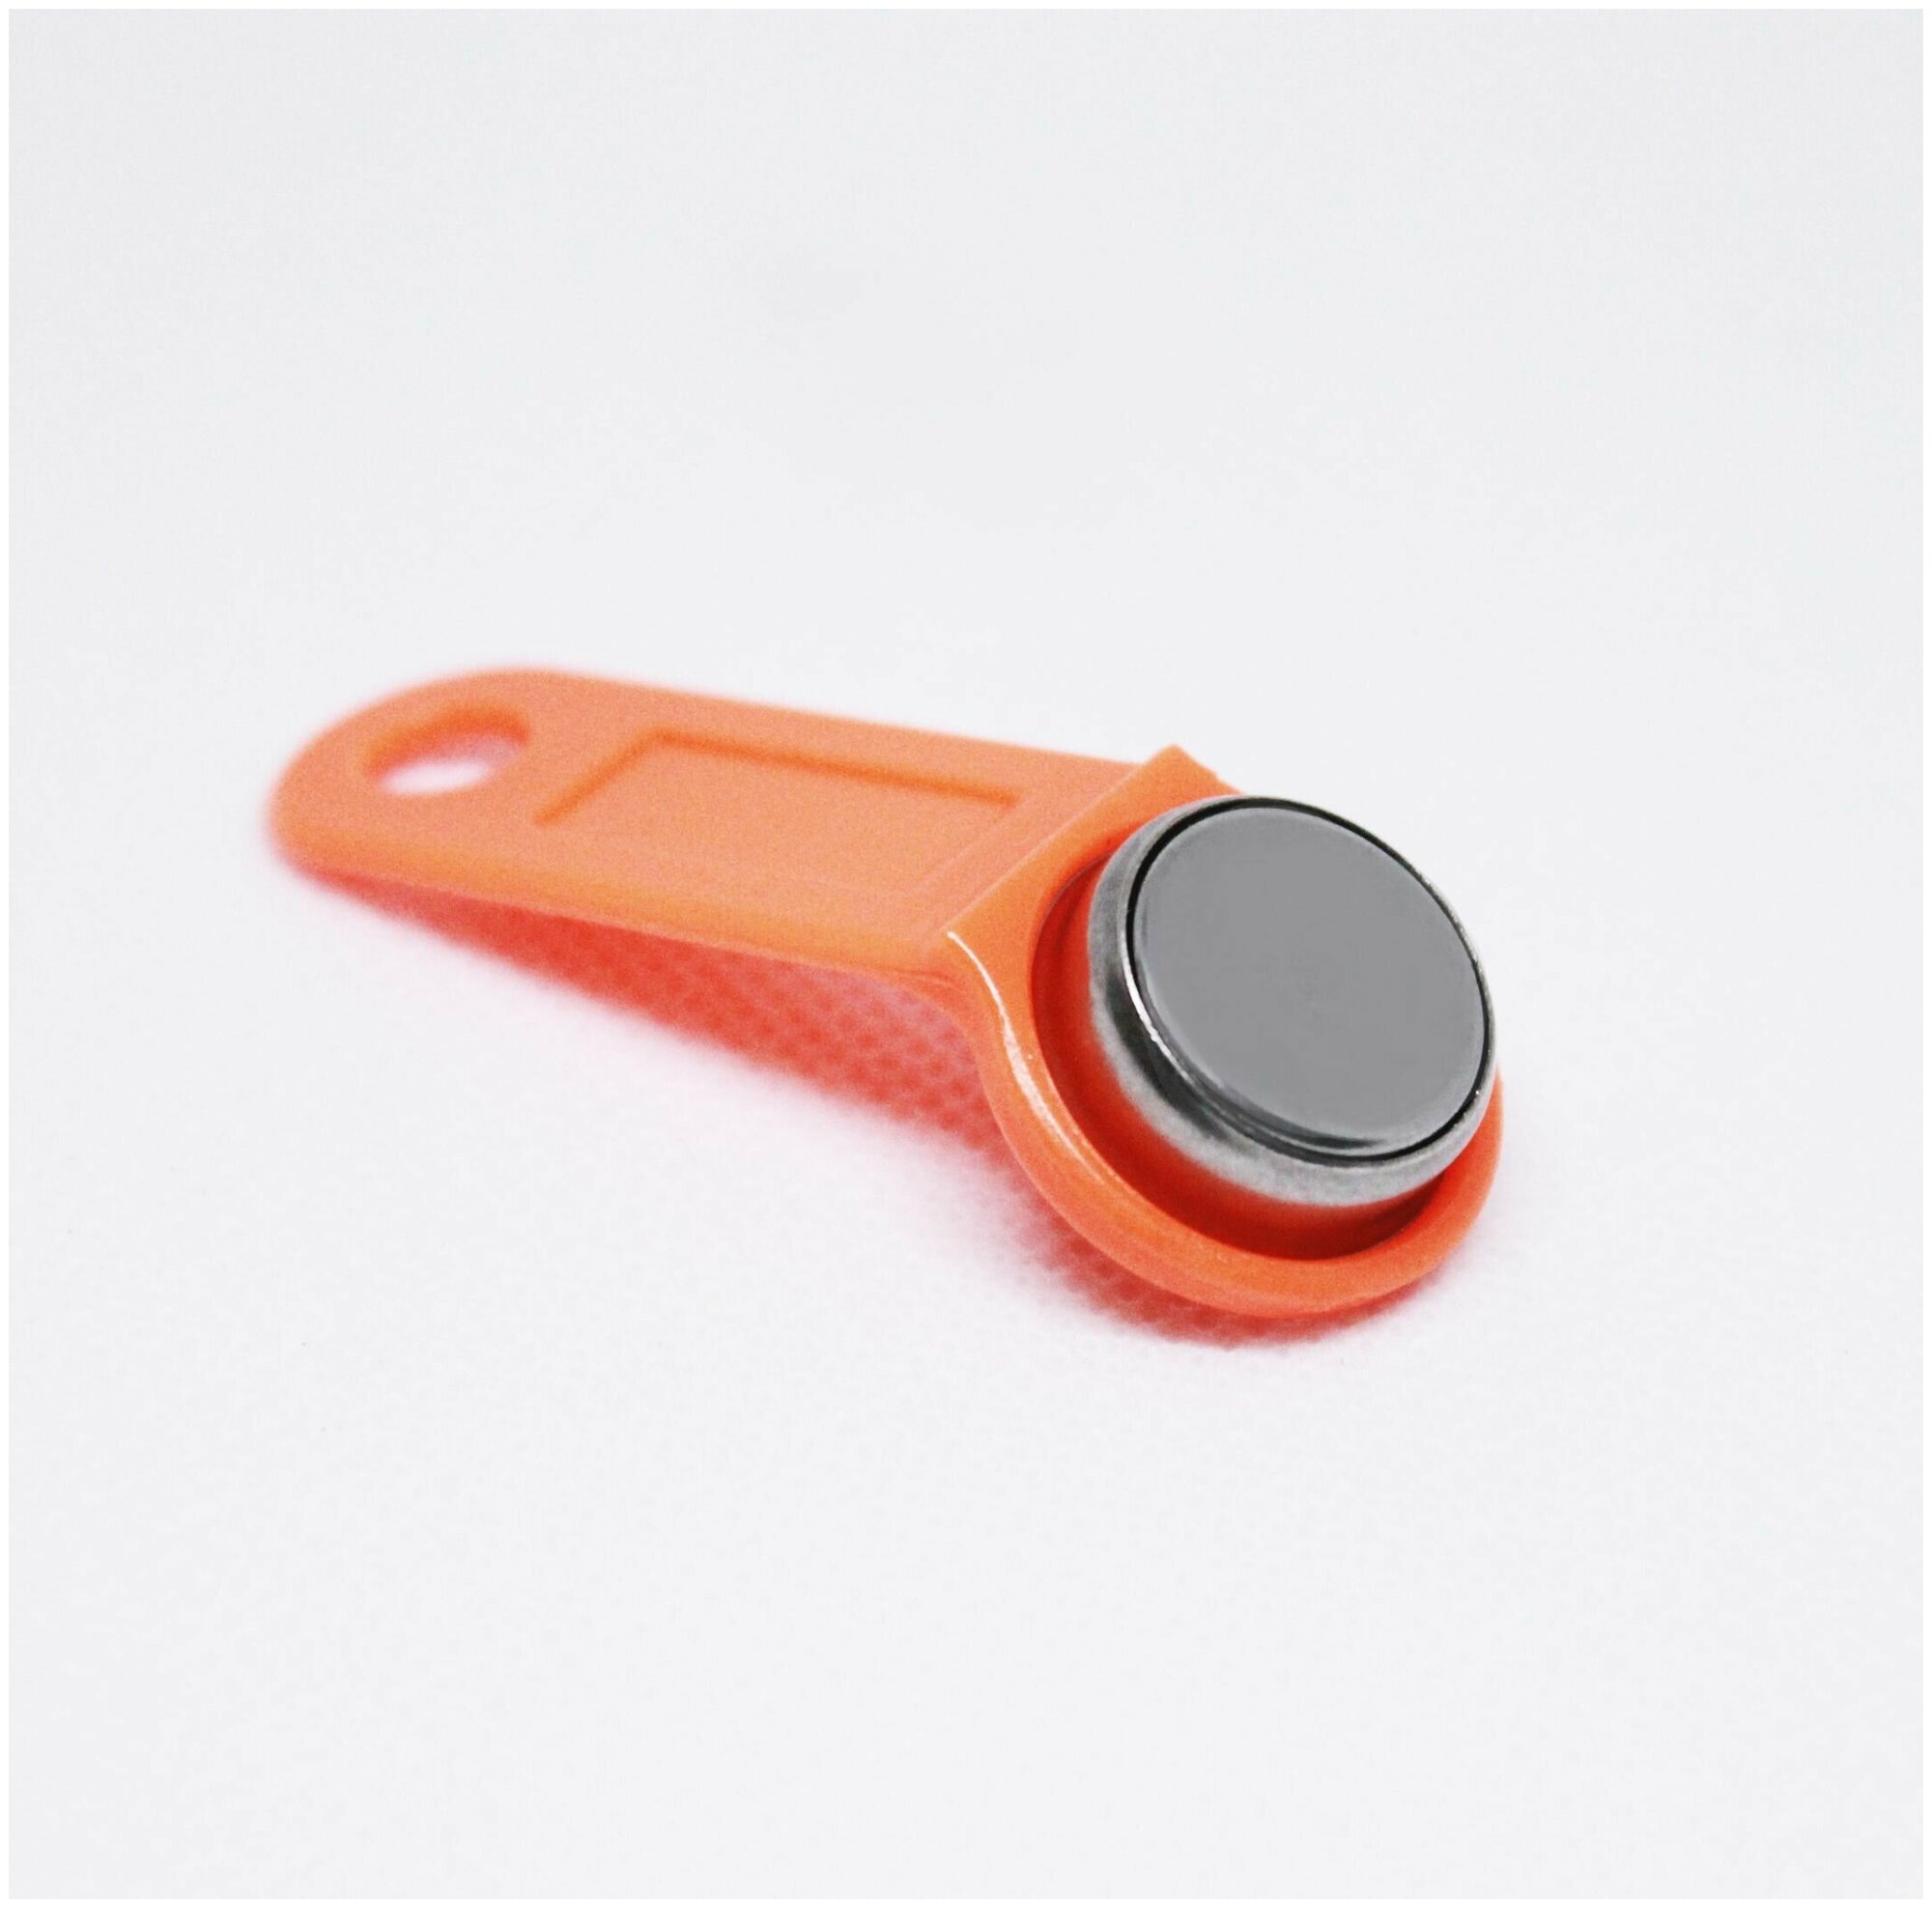 Электронный ключ для домофона RW1990 перезаписываемый ( оранжевый 100 шт ) заготовка таблетка Touch Memory для создания копий контактных ключей TM